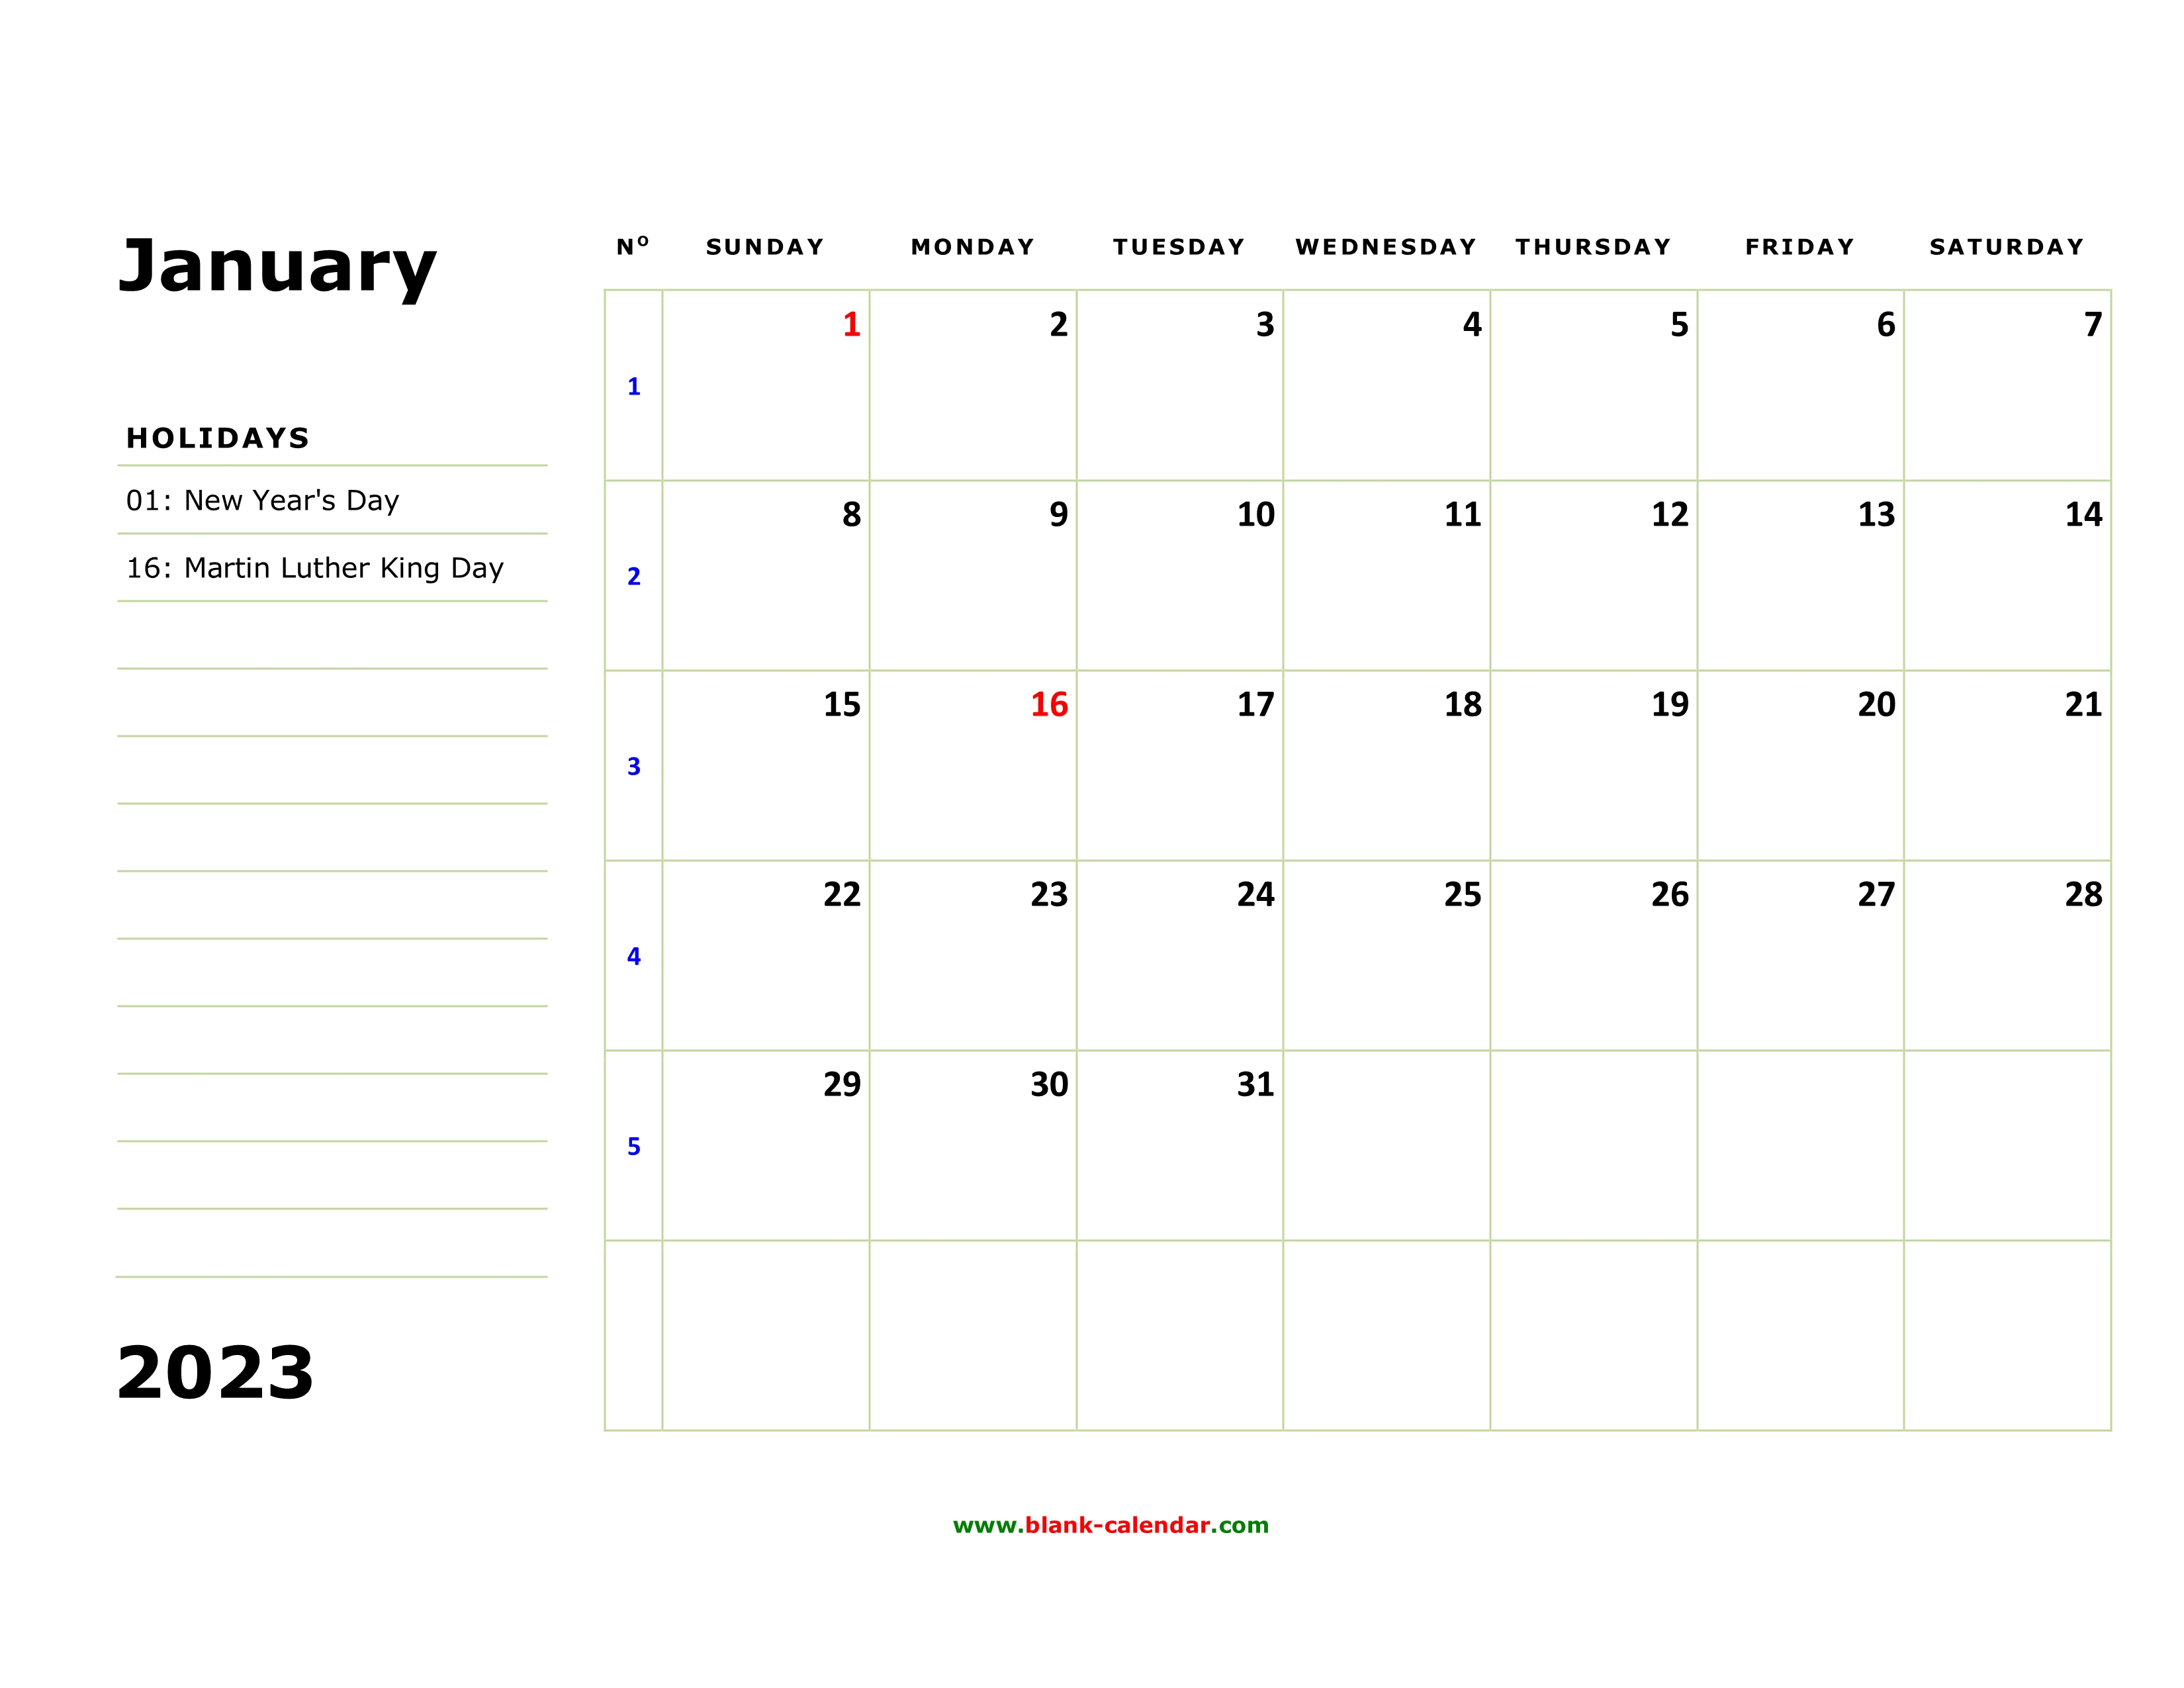 2023-calendar-pdf-word-excel-2023-calendar-pdf-word-excel-2023